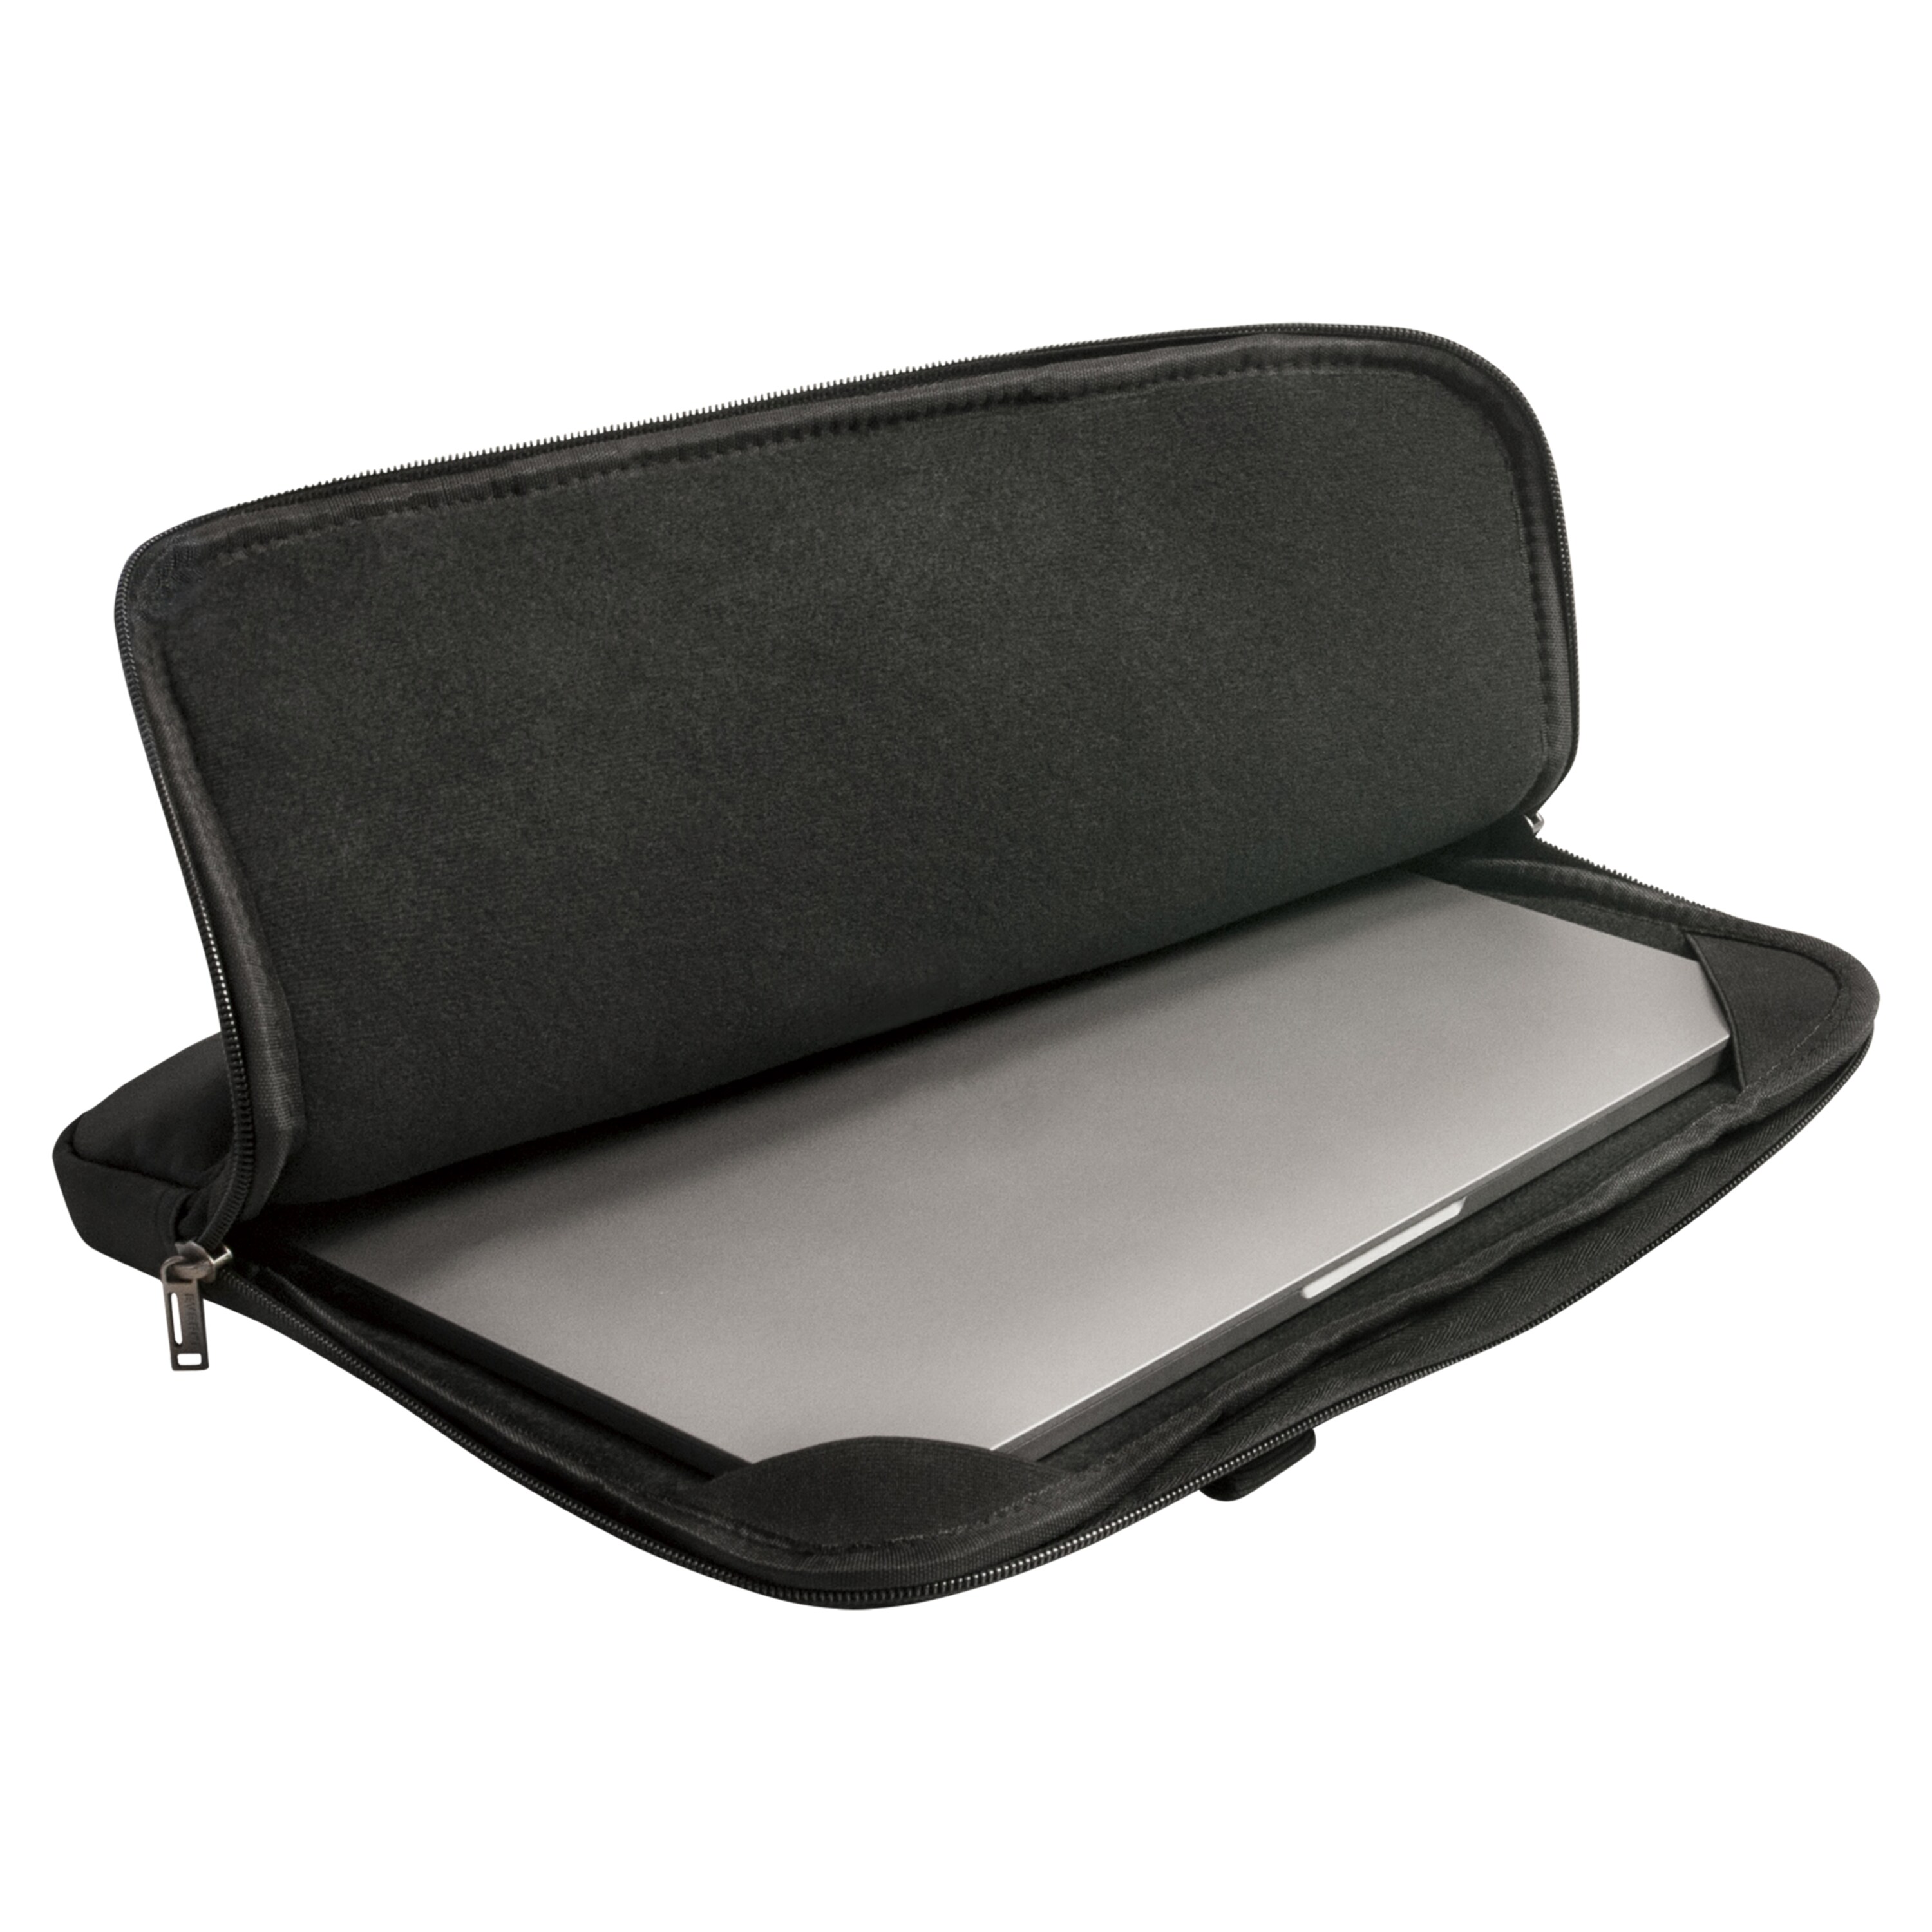 EVERKI 808 Sleeve Laptoptasche, für Geräte bis 13,3'', Memory-Foam Polsterung, elegantes Design